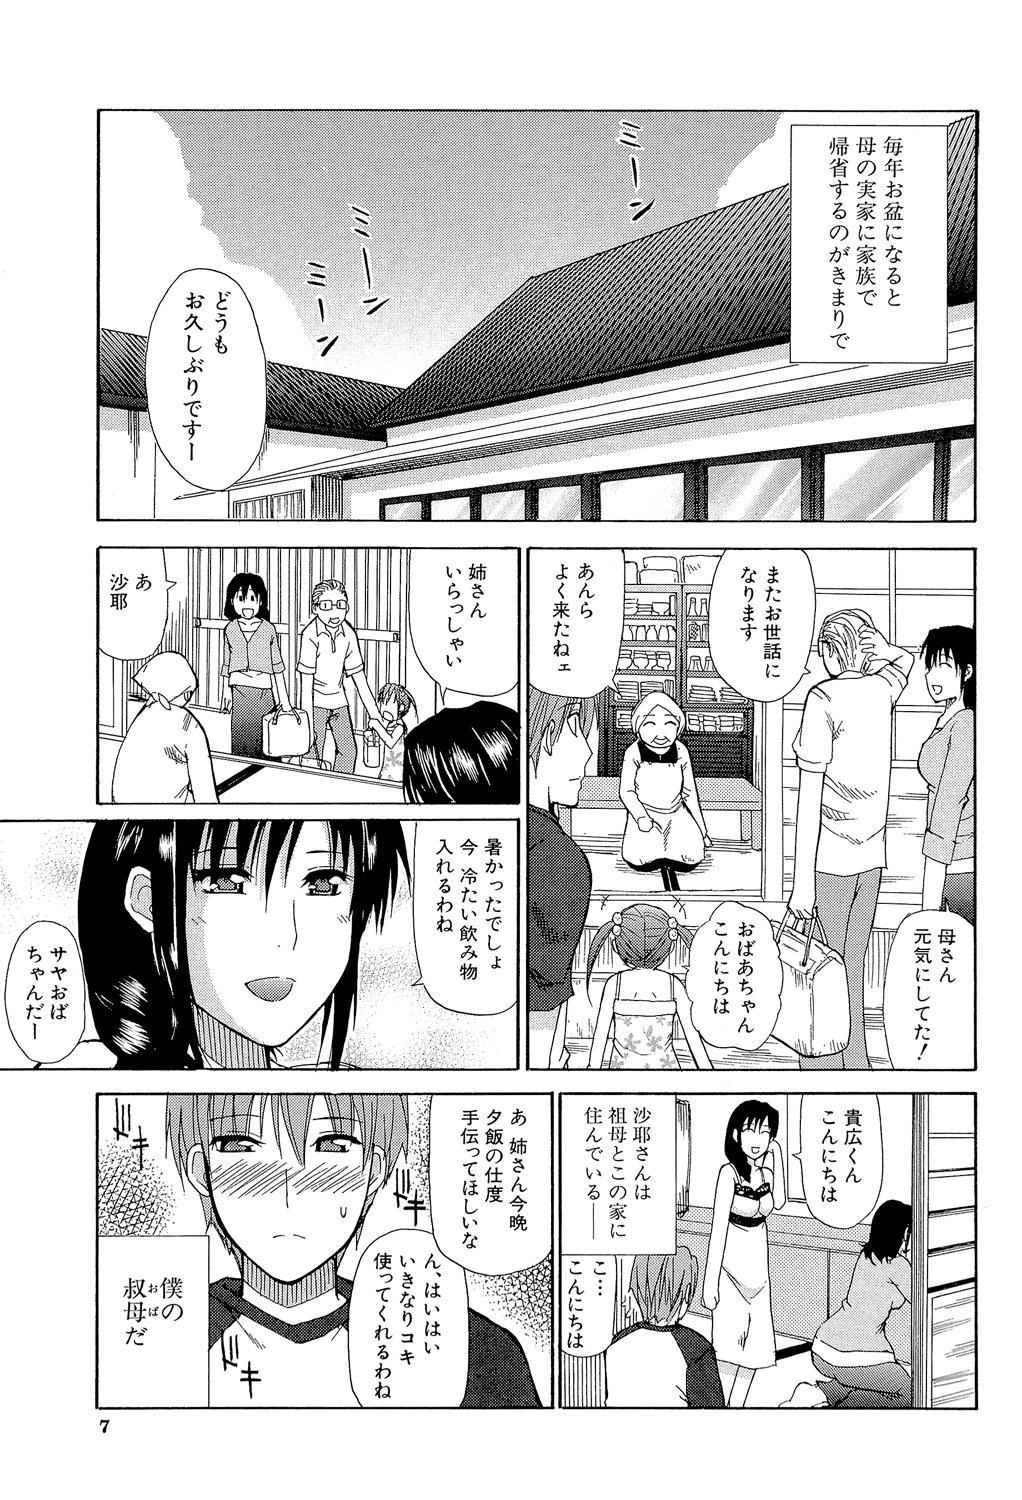 Asshole Ichizu na Toriko - A Earnest Captive Peludo - Page 6